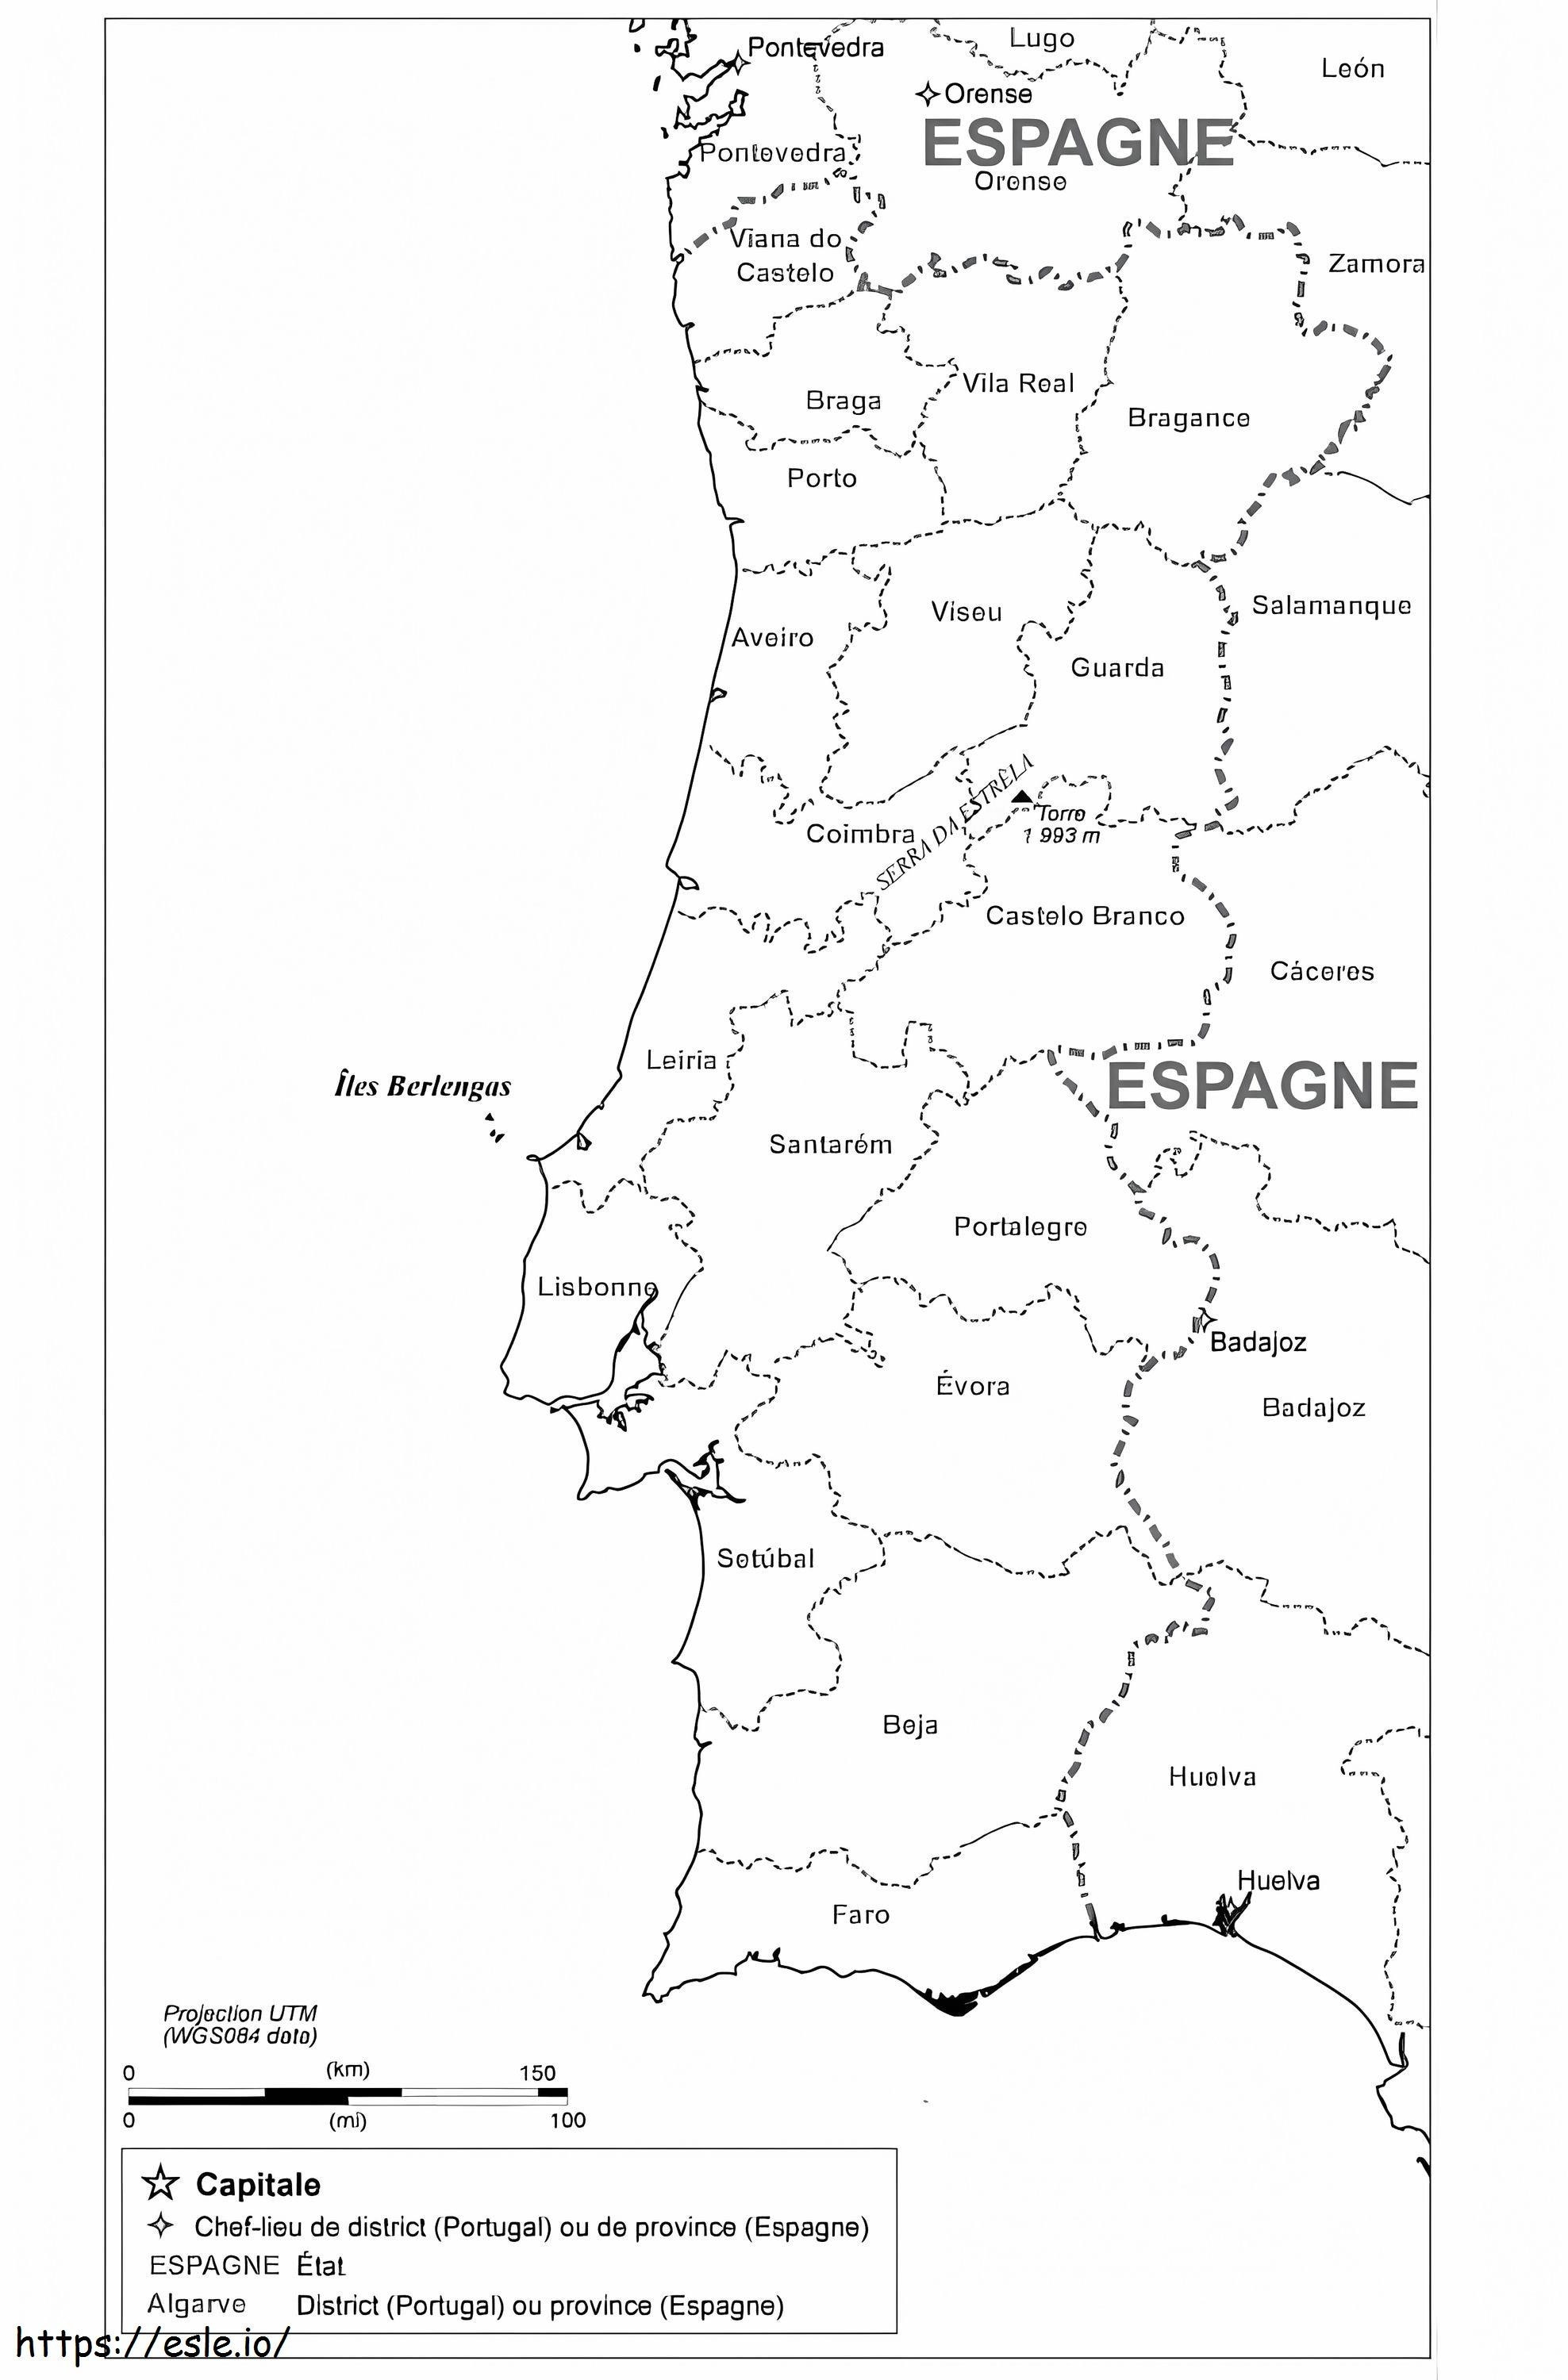 Mappa del Portogallo 2 da colorare